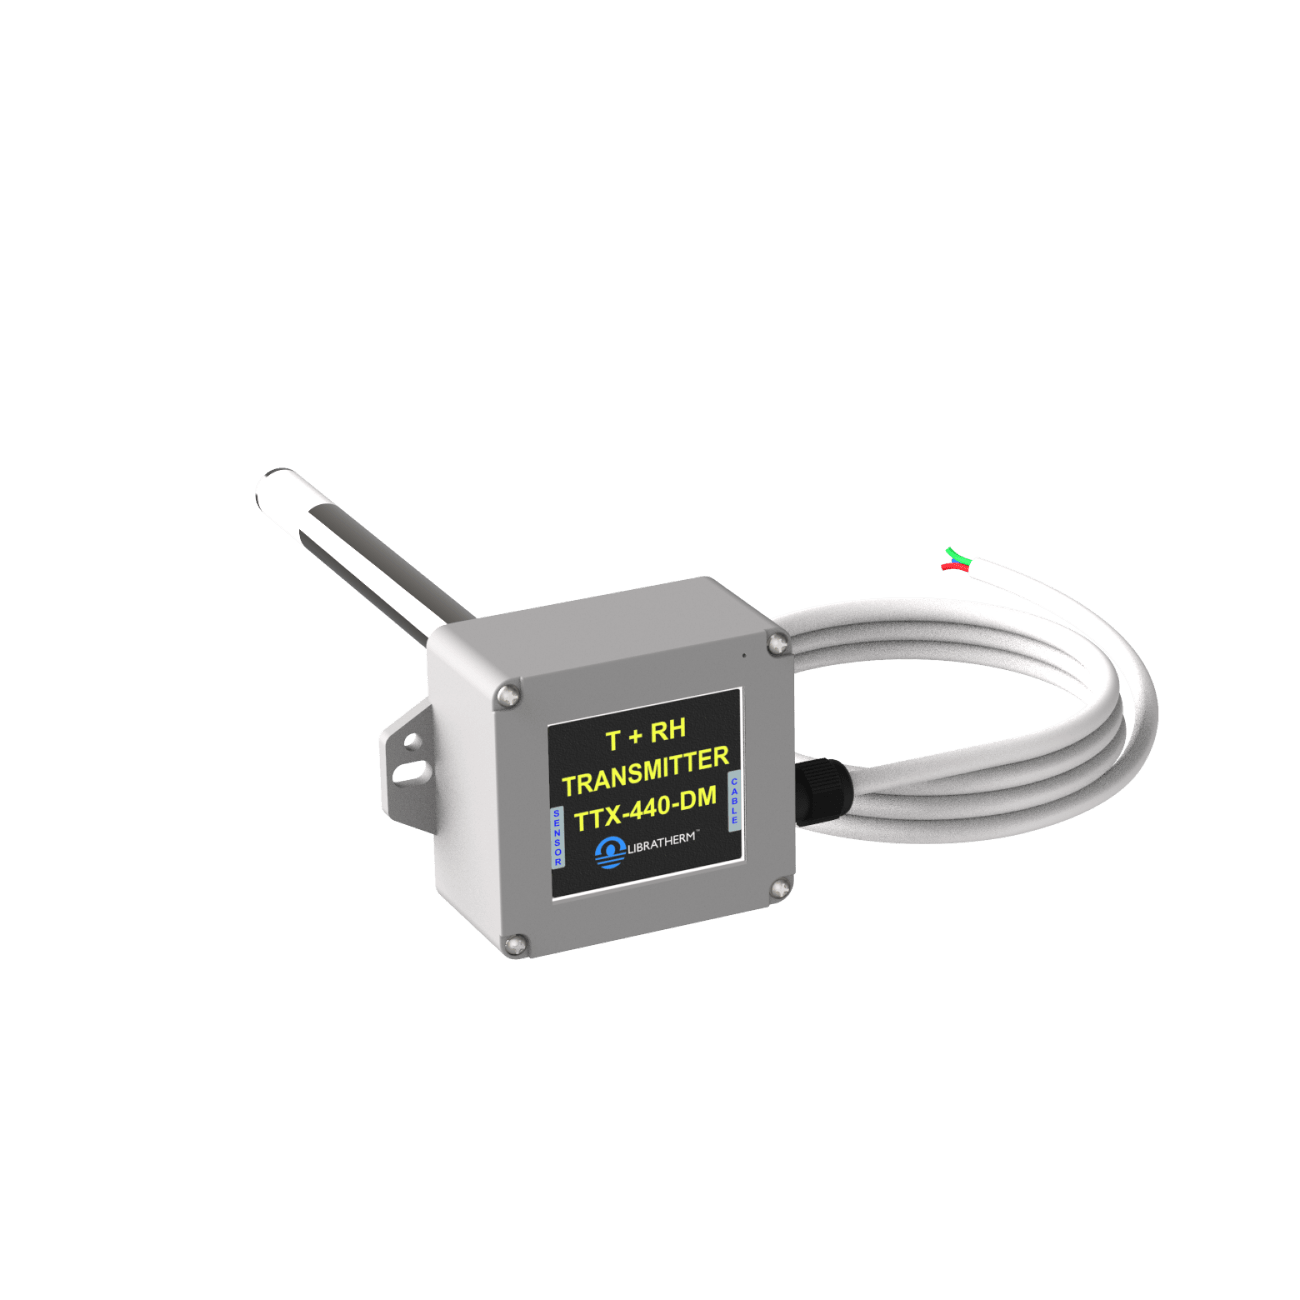 Santa Fe Digital Hydrometer & Sensor - Part No. 4038844